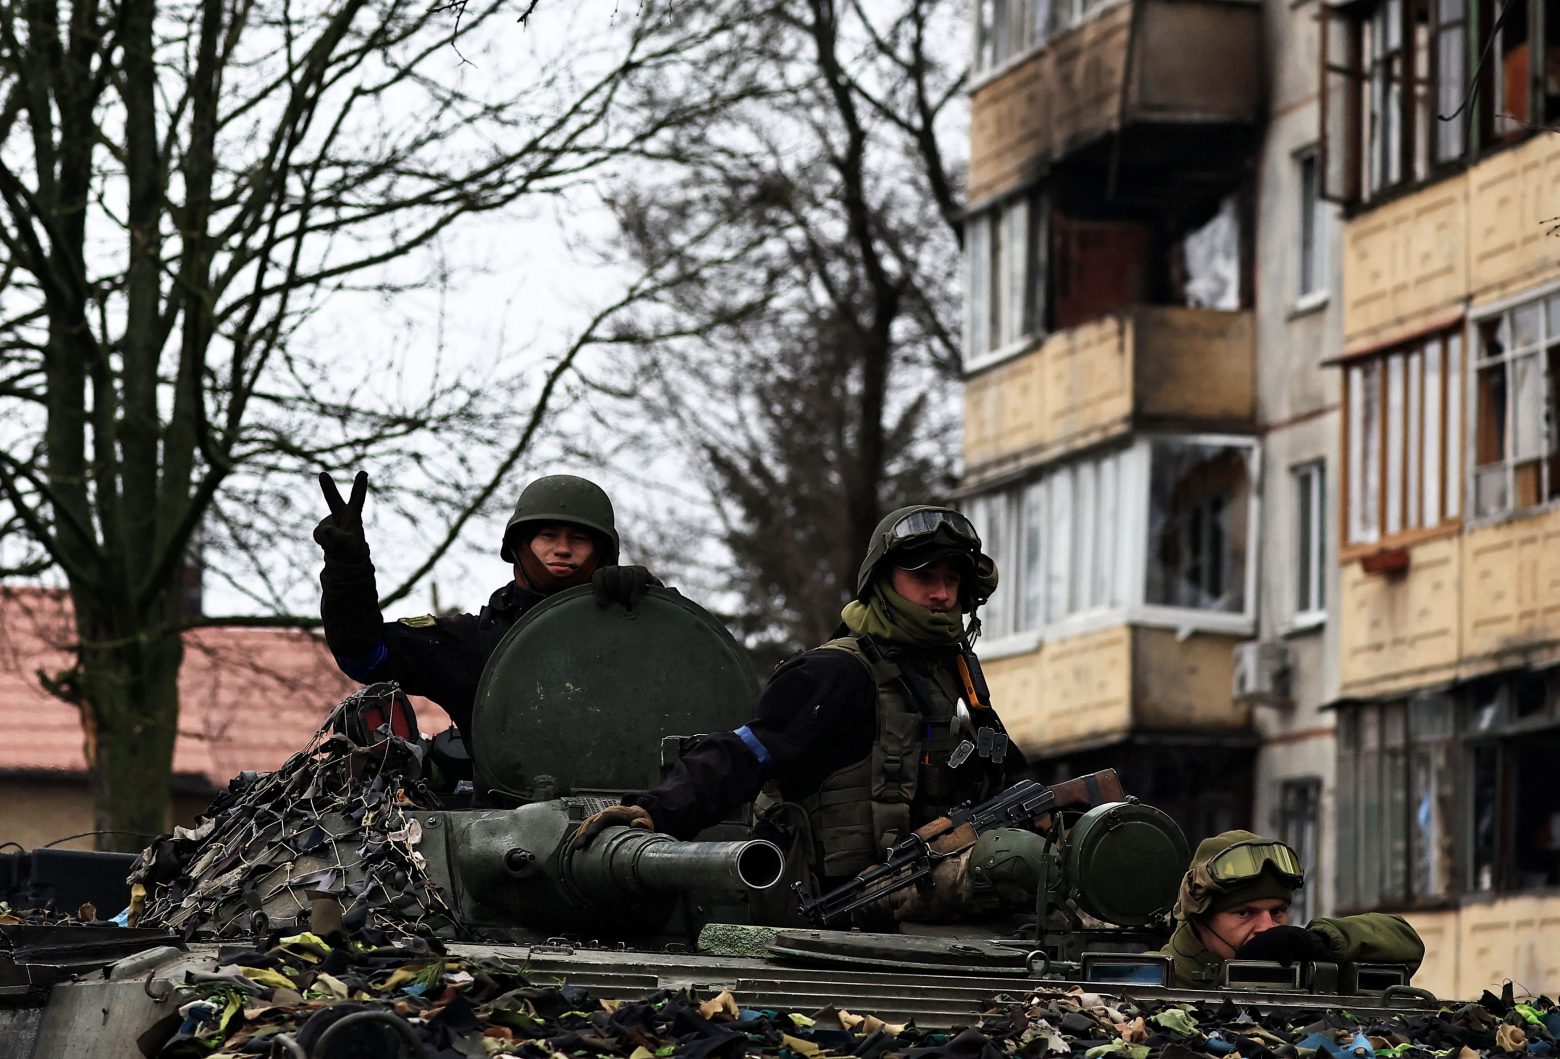 Ουκρανία: Έφτασαν αμερικάνικα όπλα από το τελευταίο πακέτο βοήθειας - Πιέζει και για ευρωπαϊκά η Φον Ντερ Λάιεν